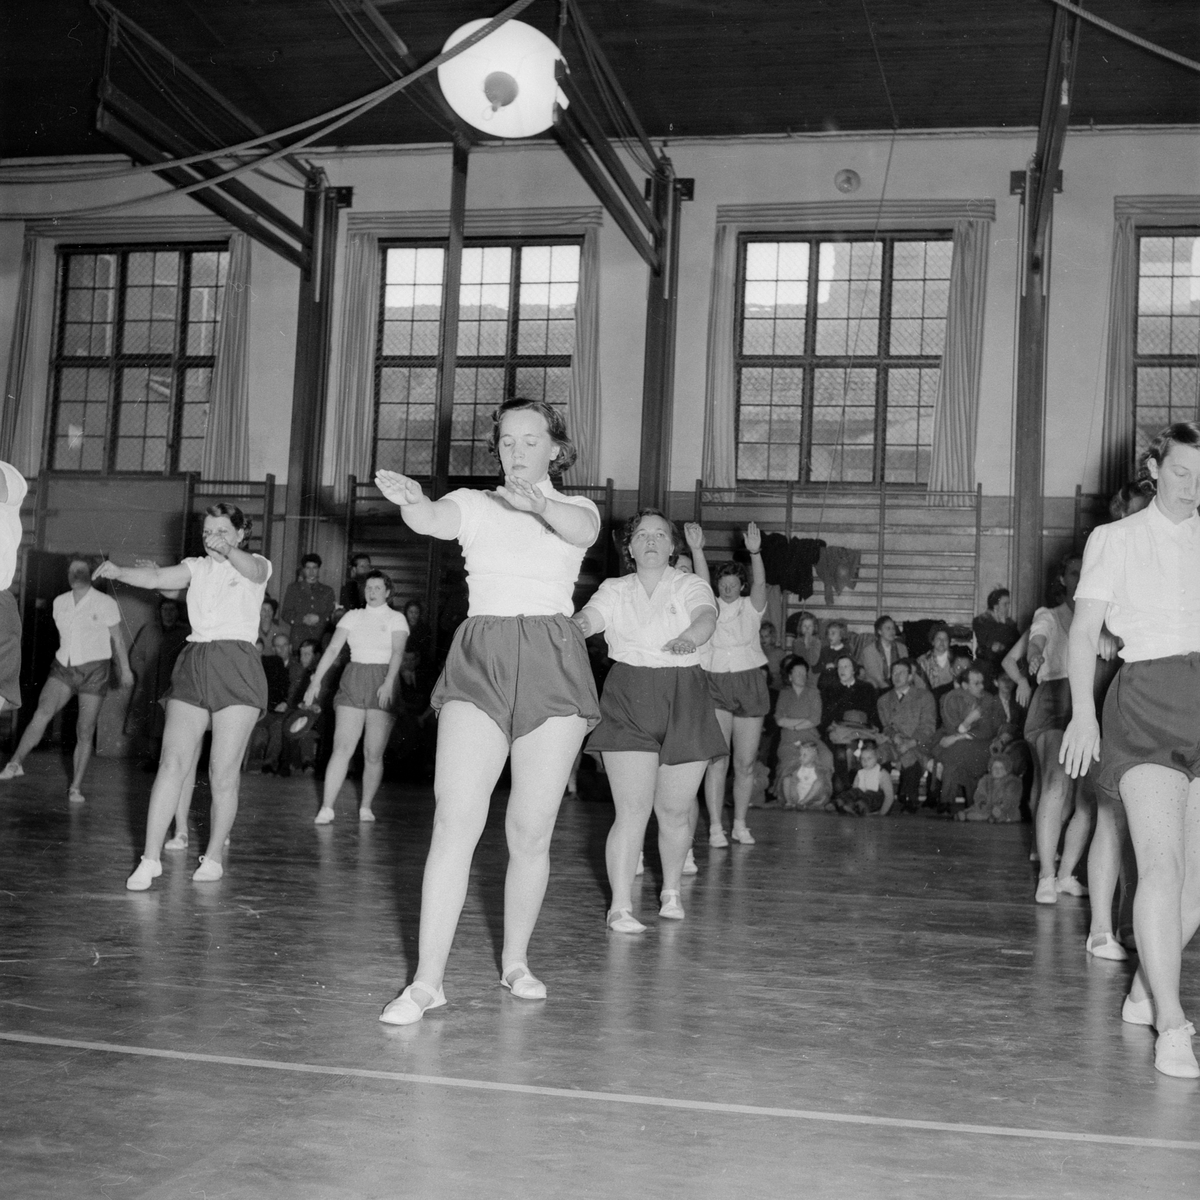 Under lite blandad samstämmighet men i övrigt säkert sevärt höll ABF:s kvinnliga gymnaster i stunden uppvisning i Lv 2-hallen. Dagen var den 29 mars 1953.